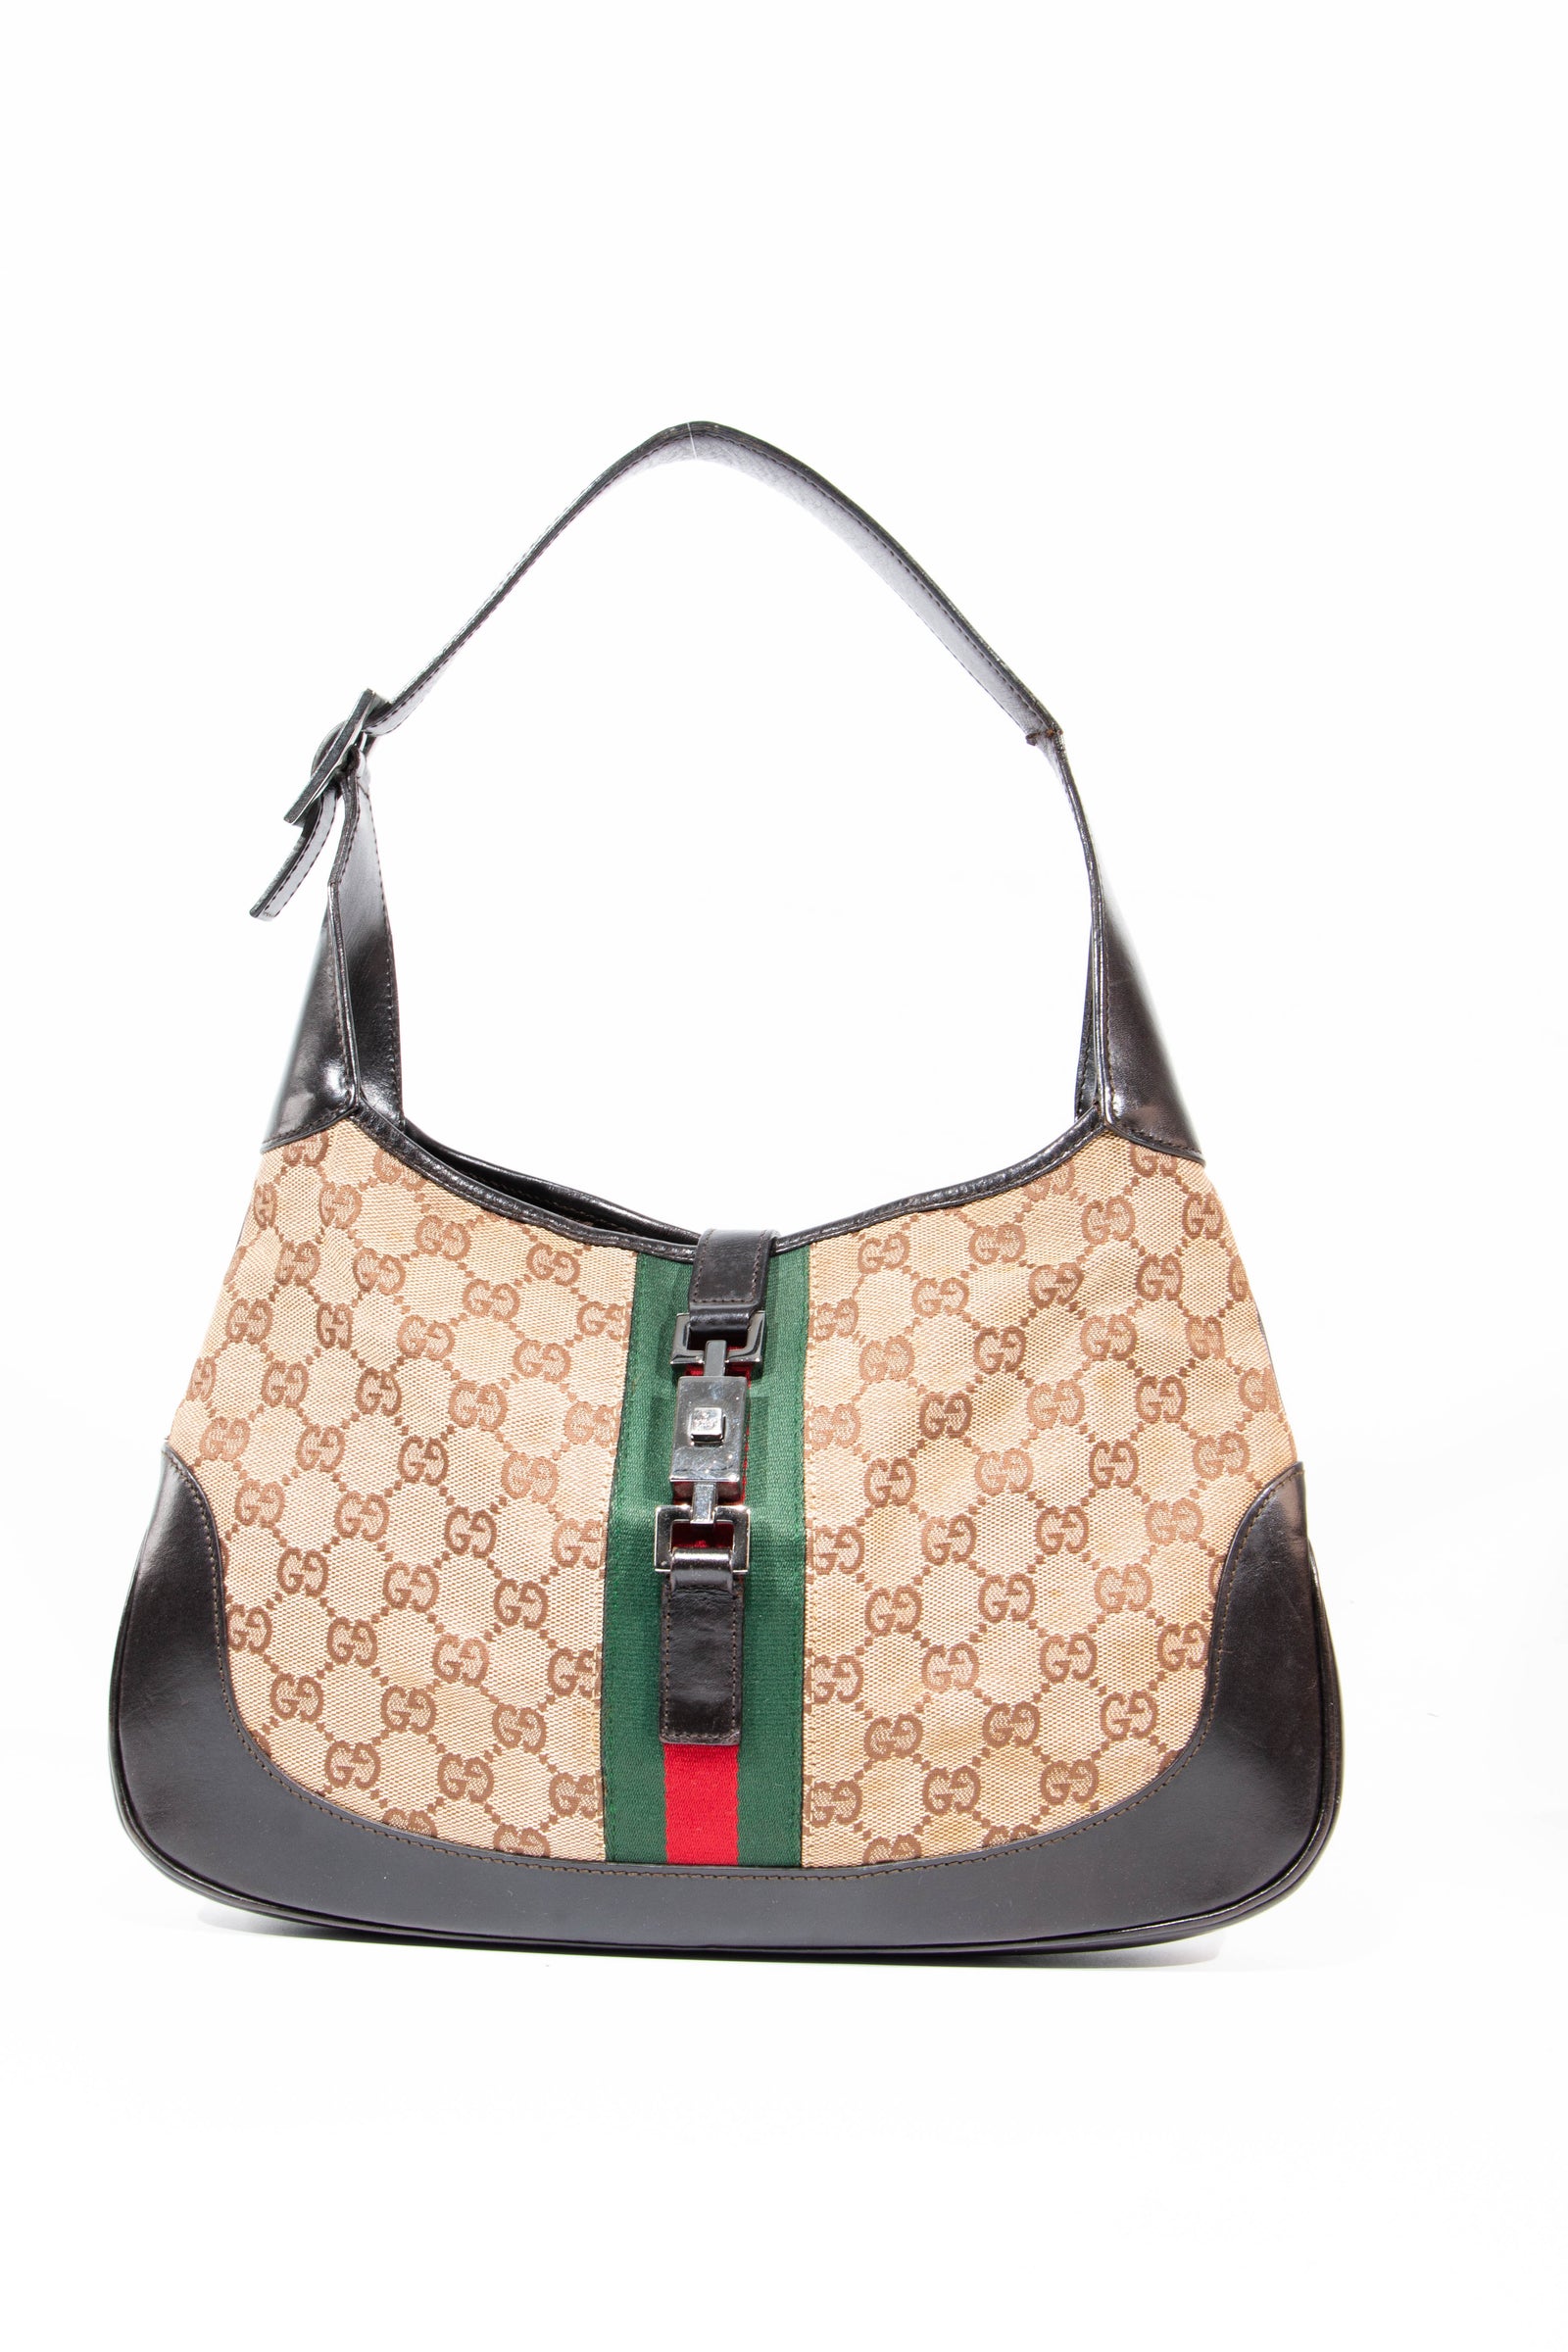 Gucci Køb din næste Gucci taske hos Collector's Cage – Collectors